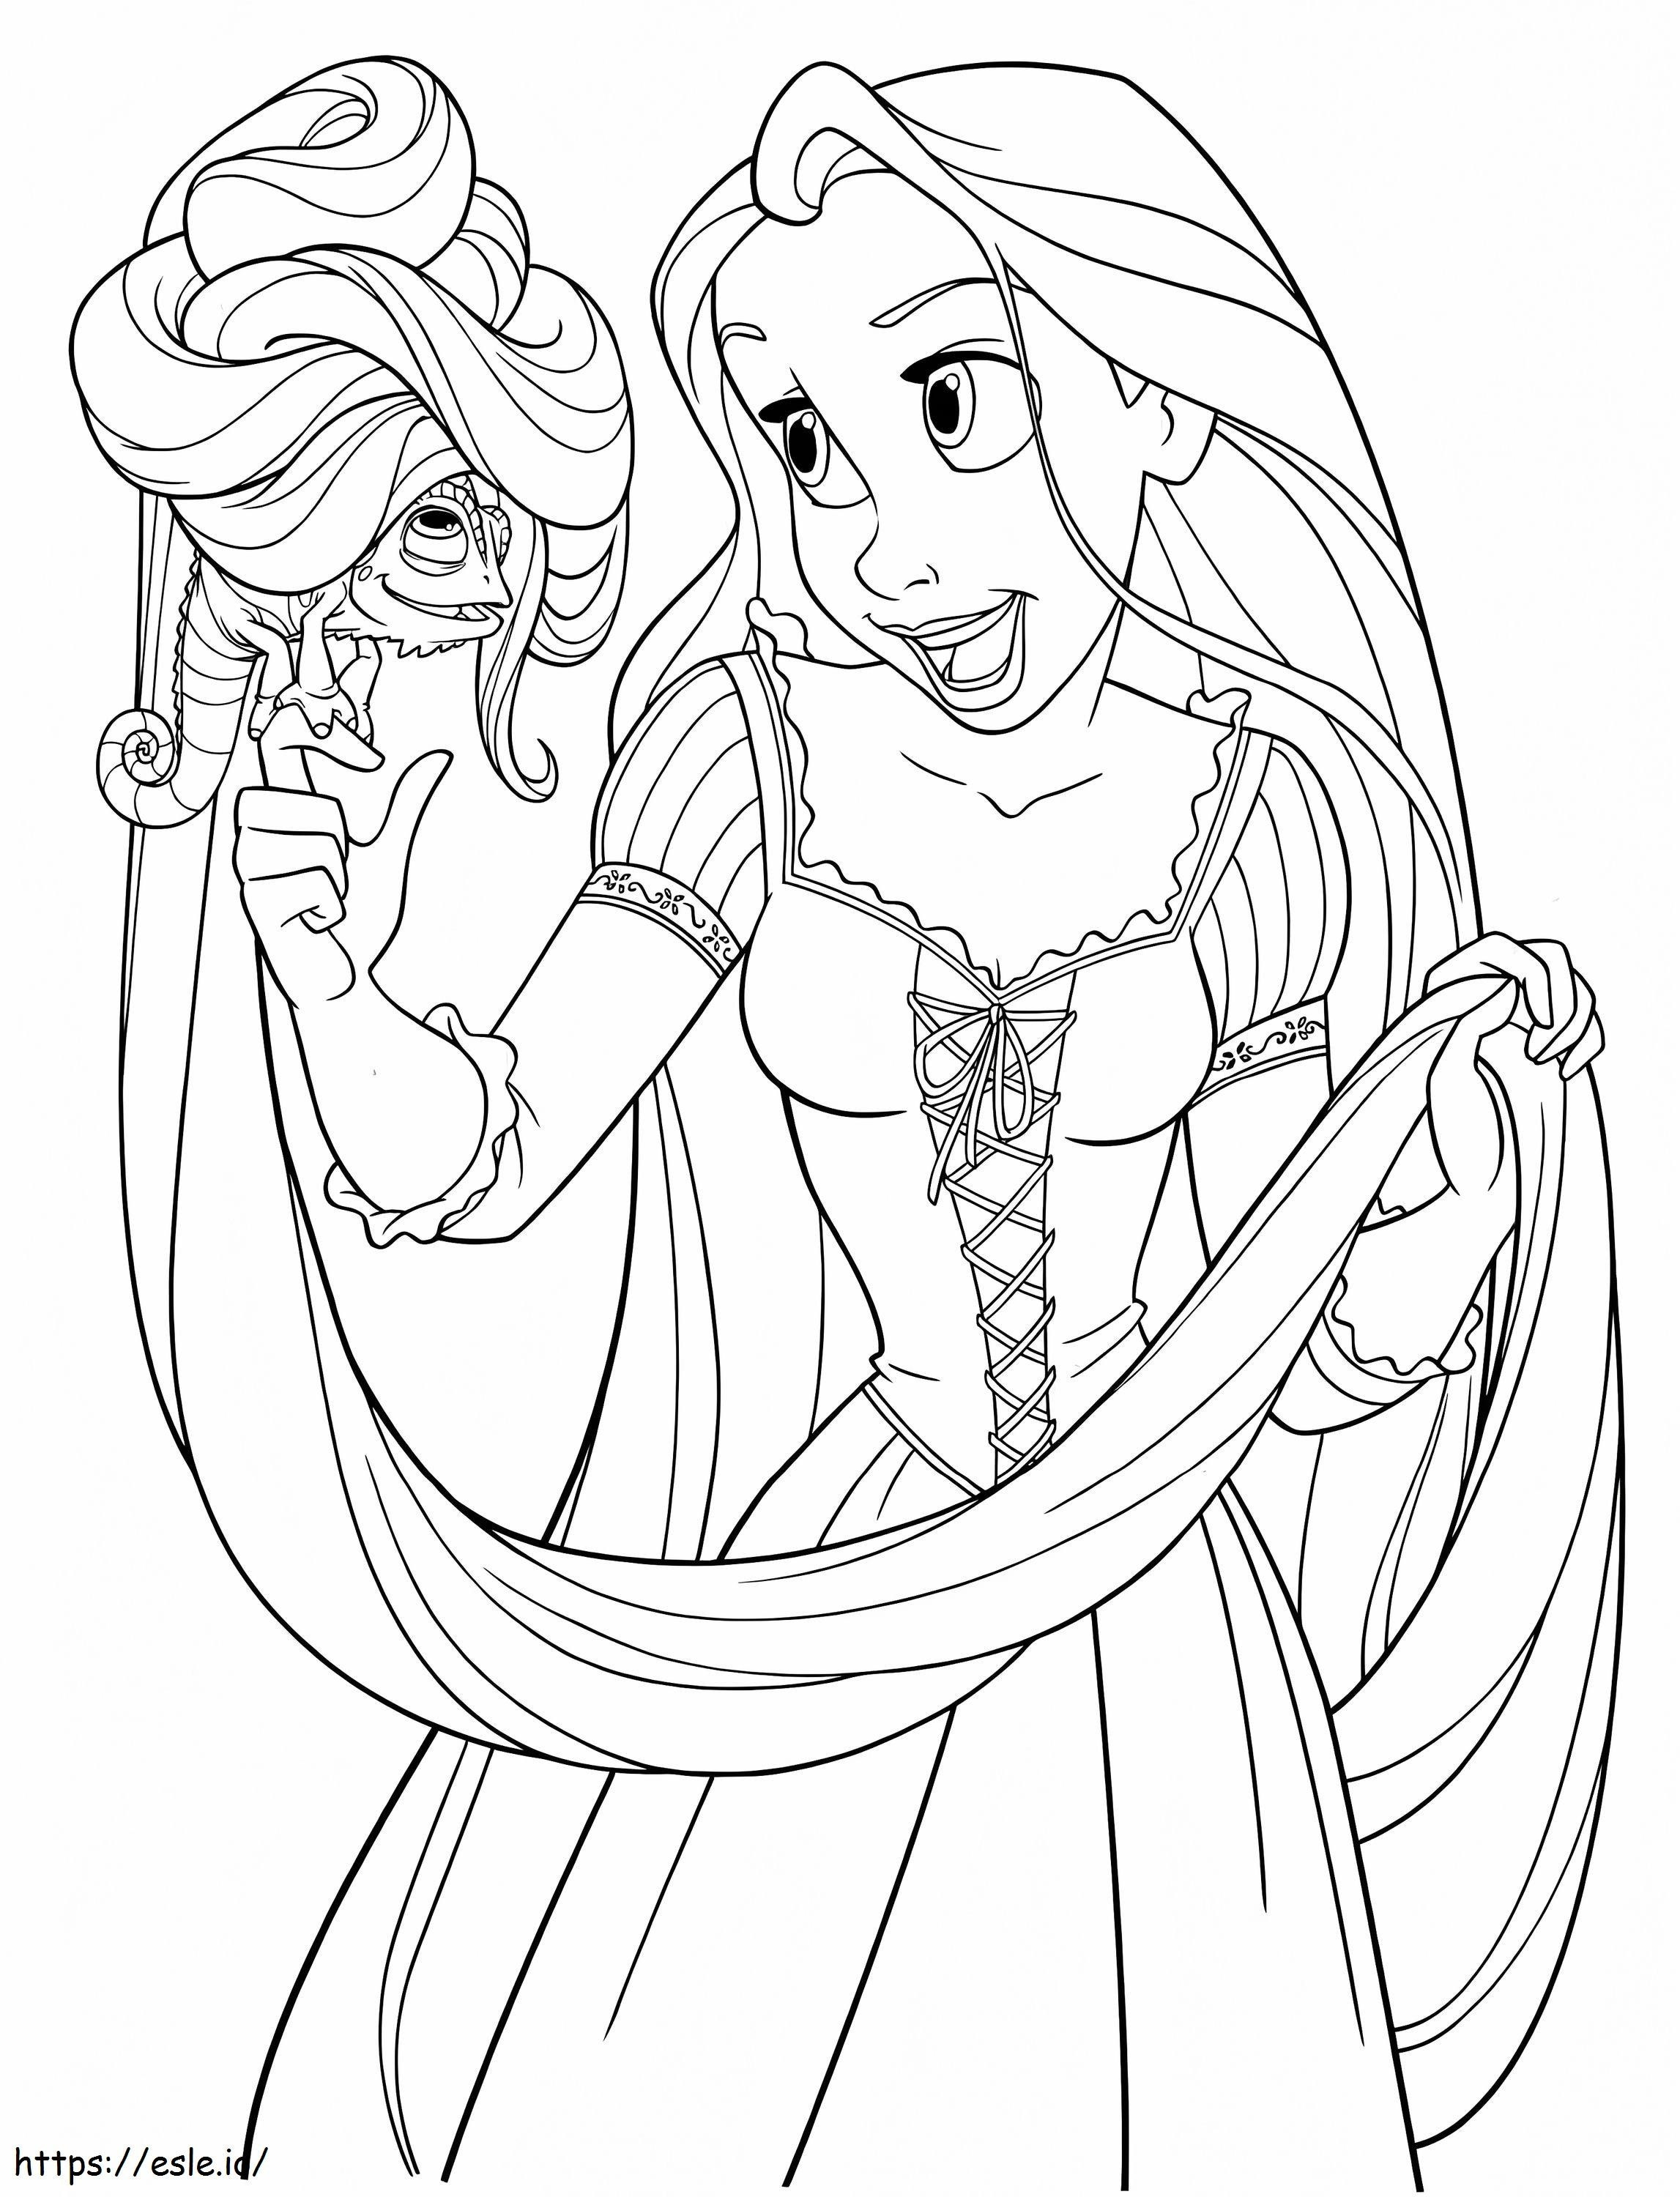 Happy Princess Rapunzel coloring page